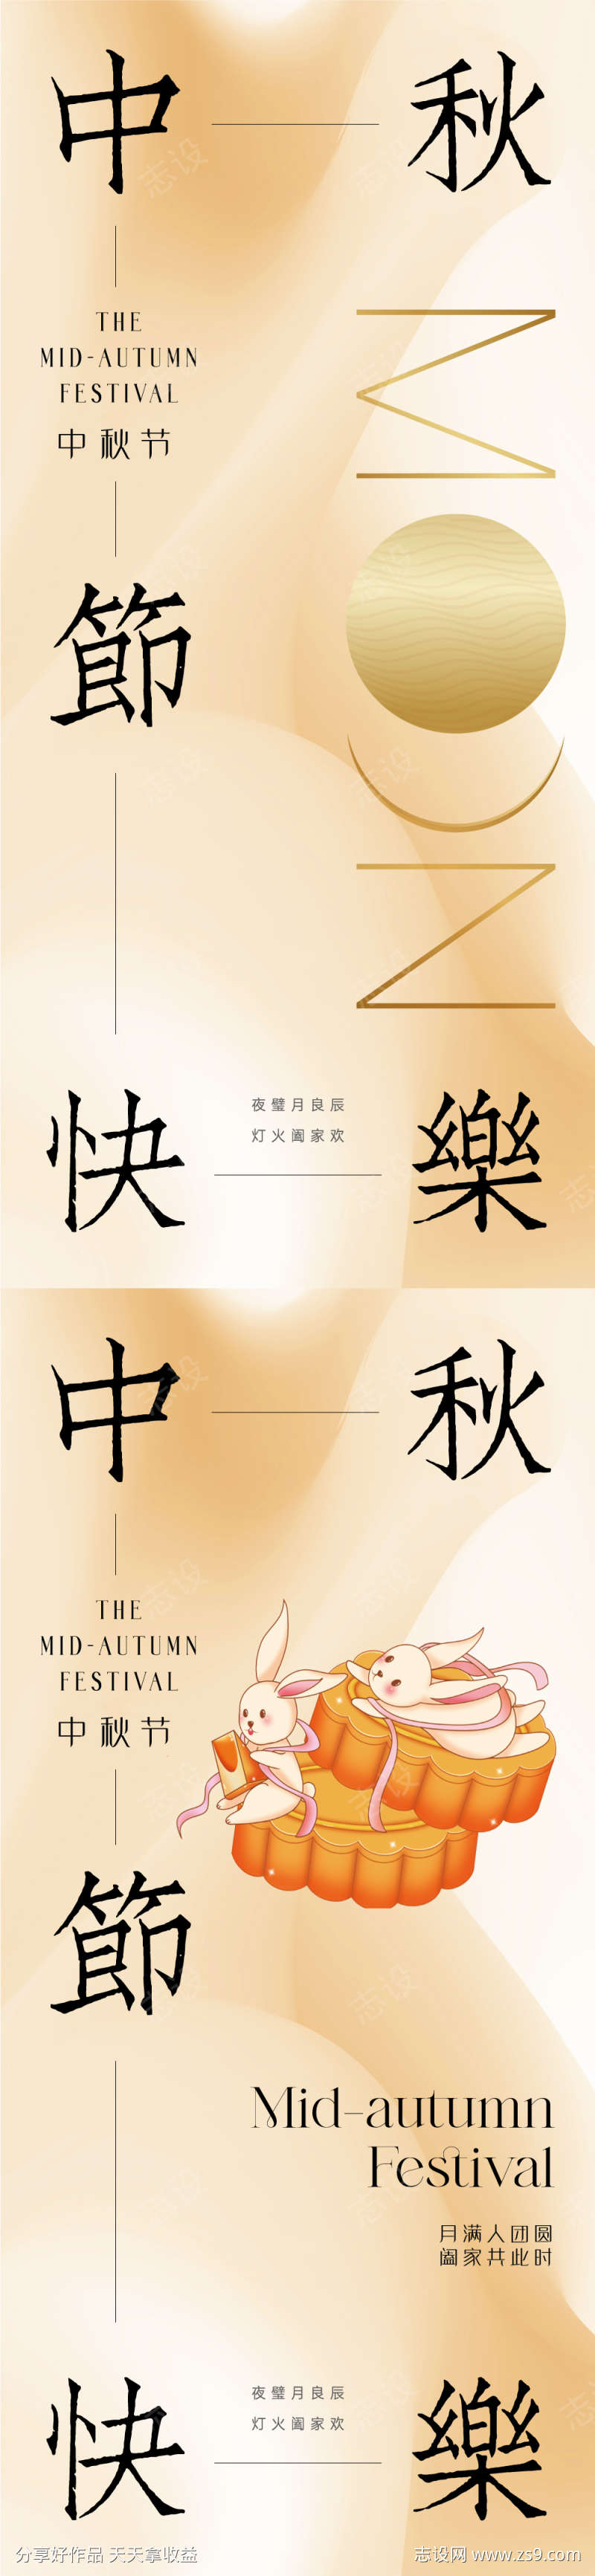 地产新中式中秋节海报